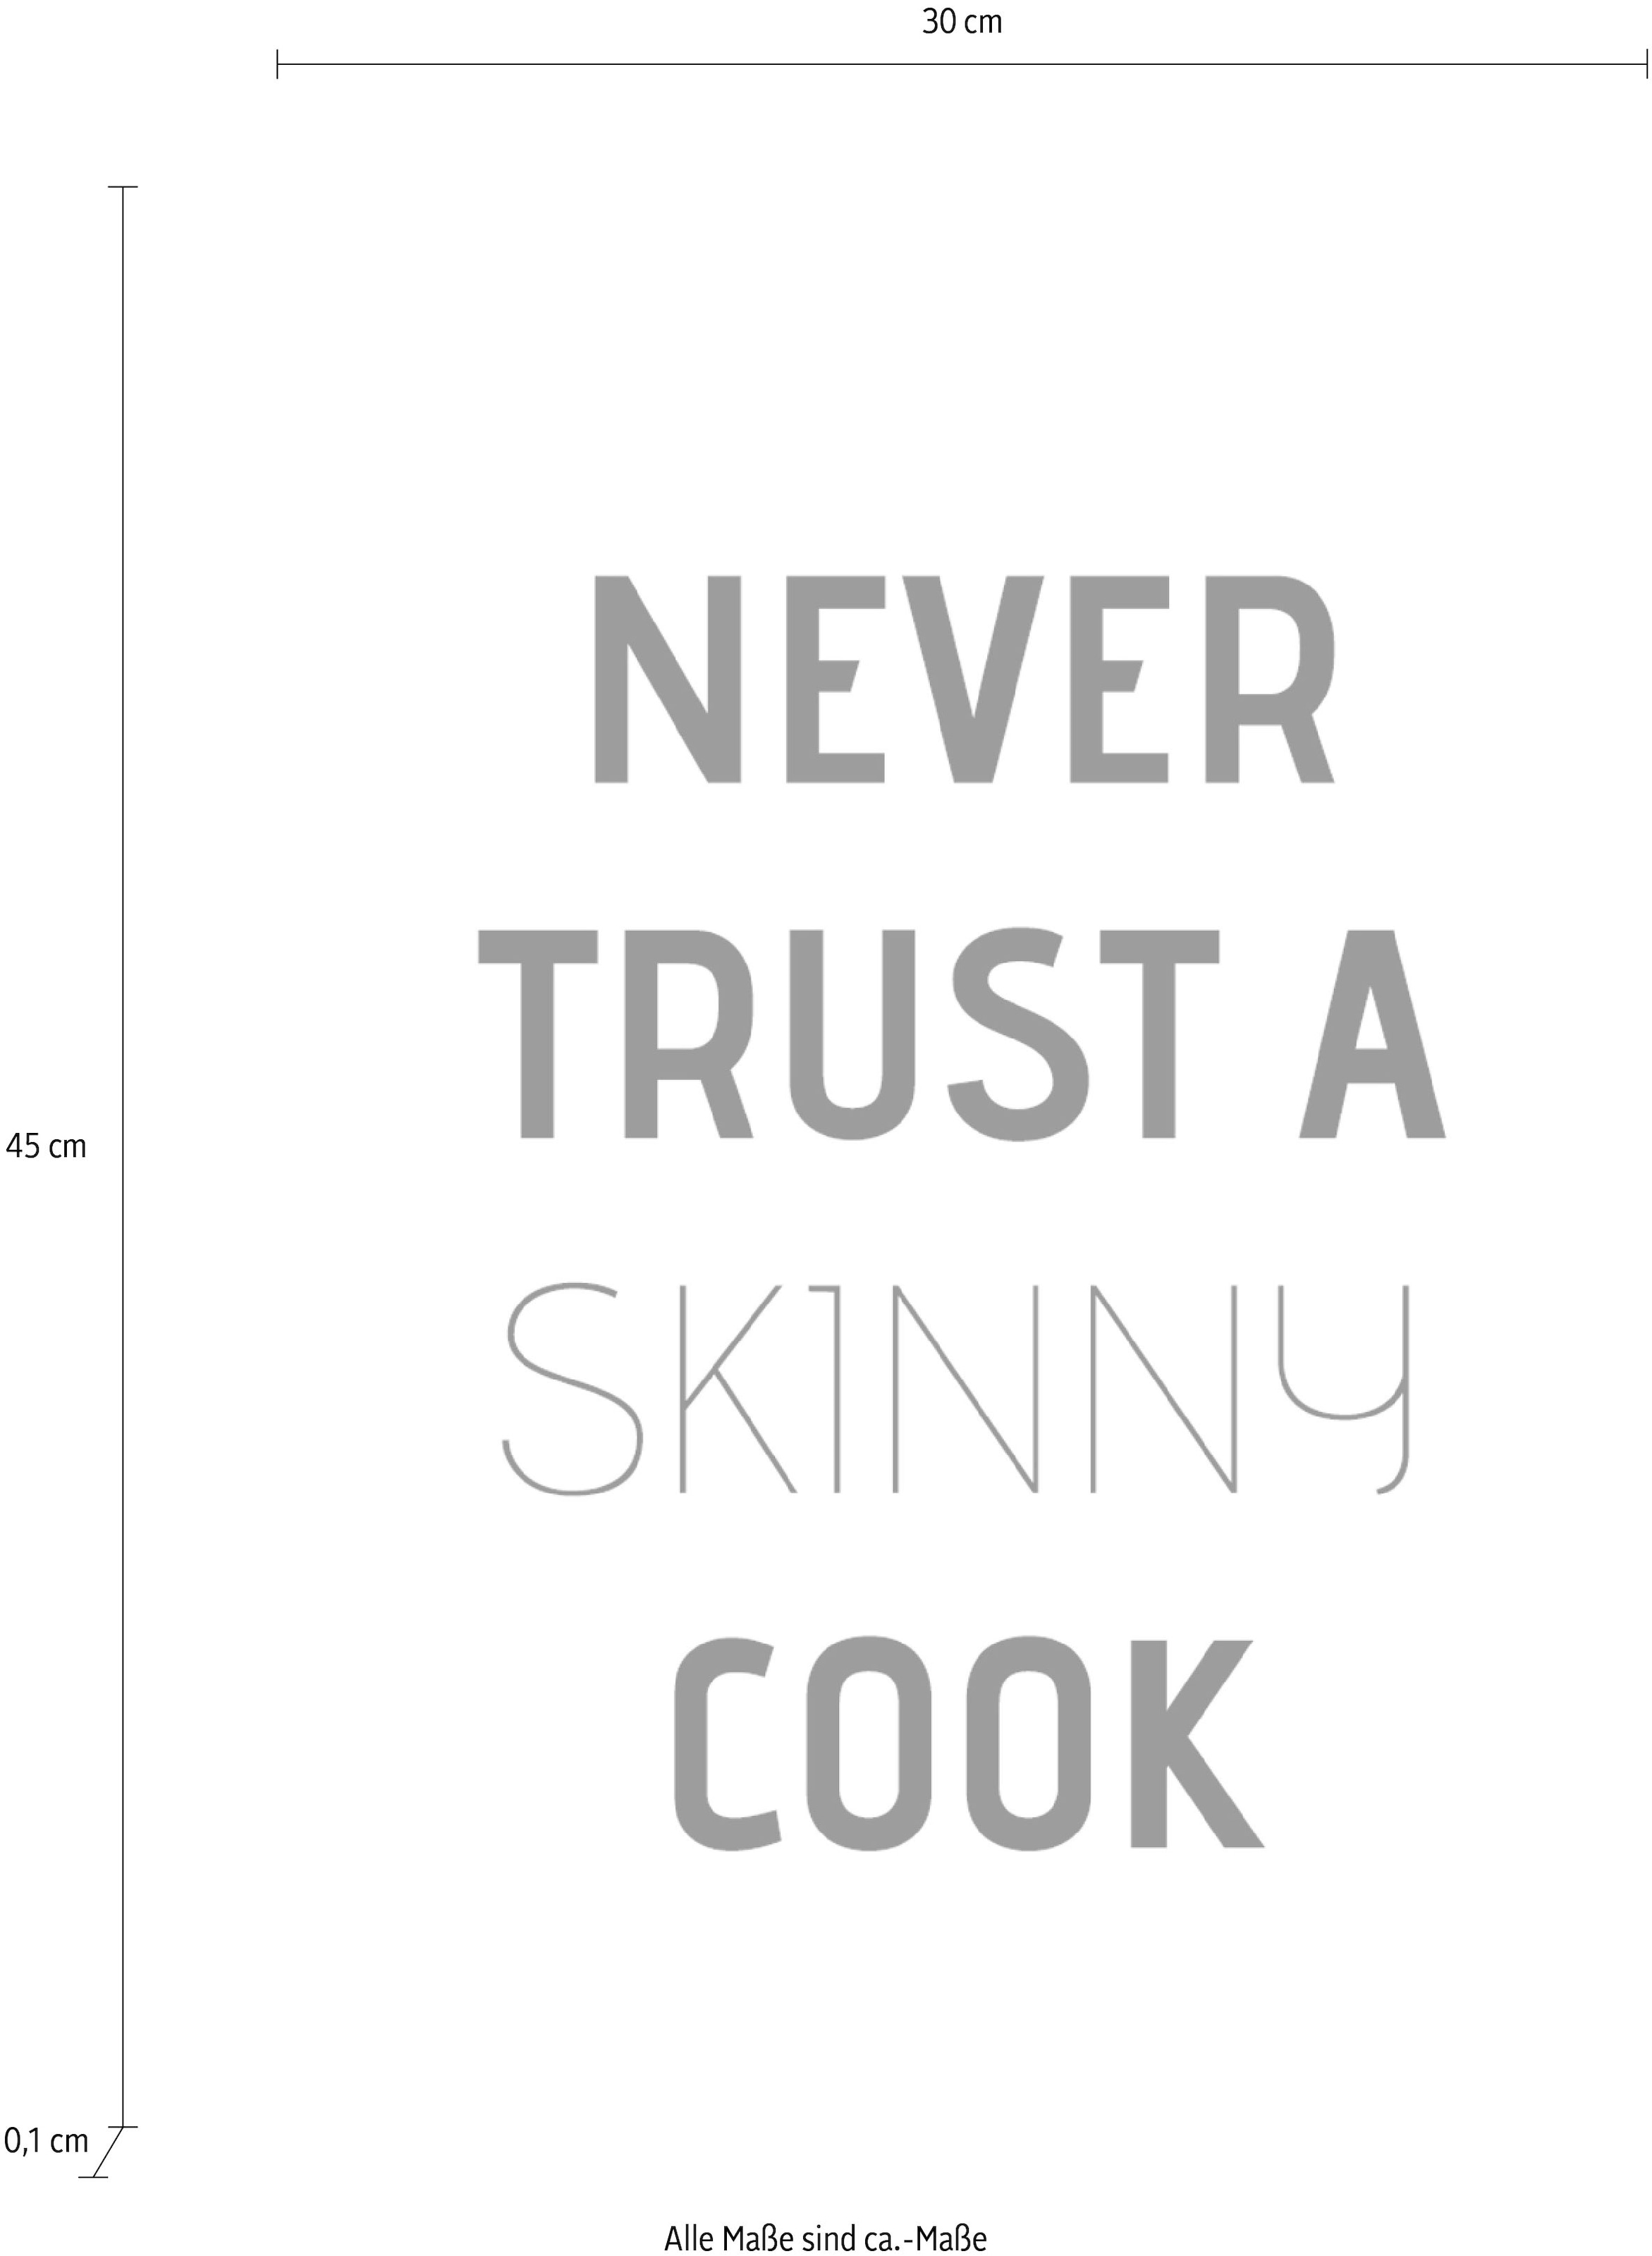 Wanddekoobjekt Stahlblech auf Schriftzug trust a bequem bestellen queence »Never cook«, skinny